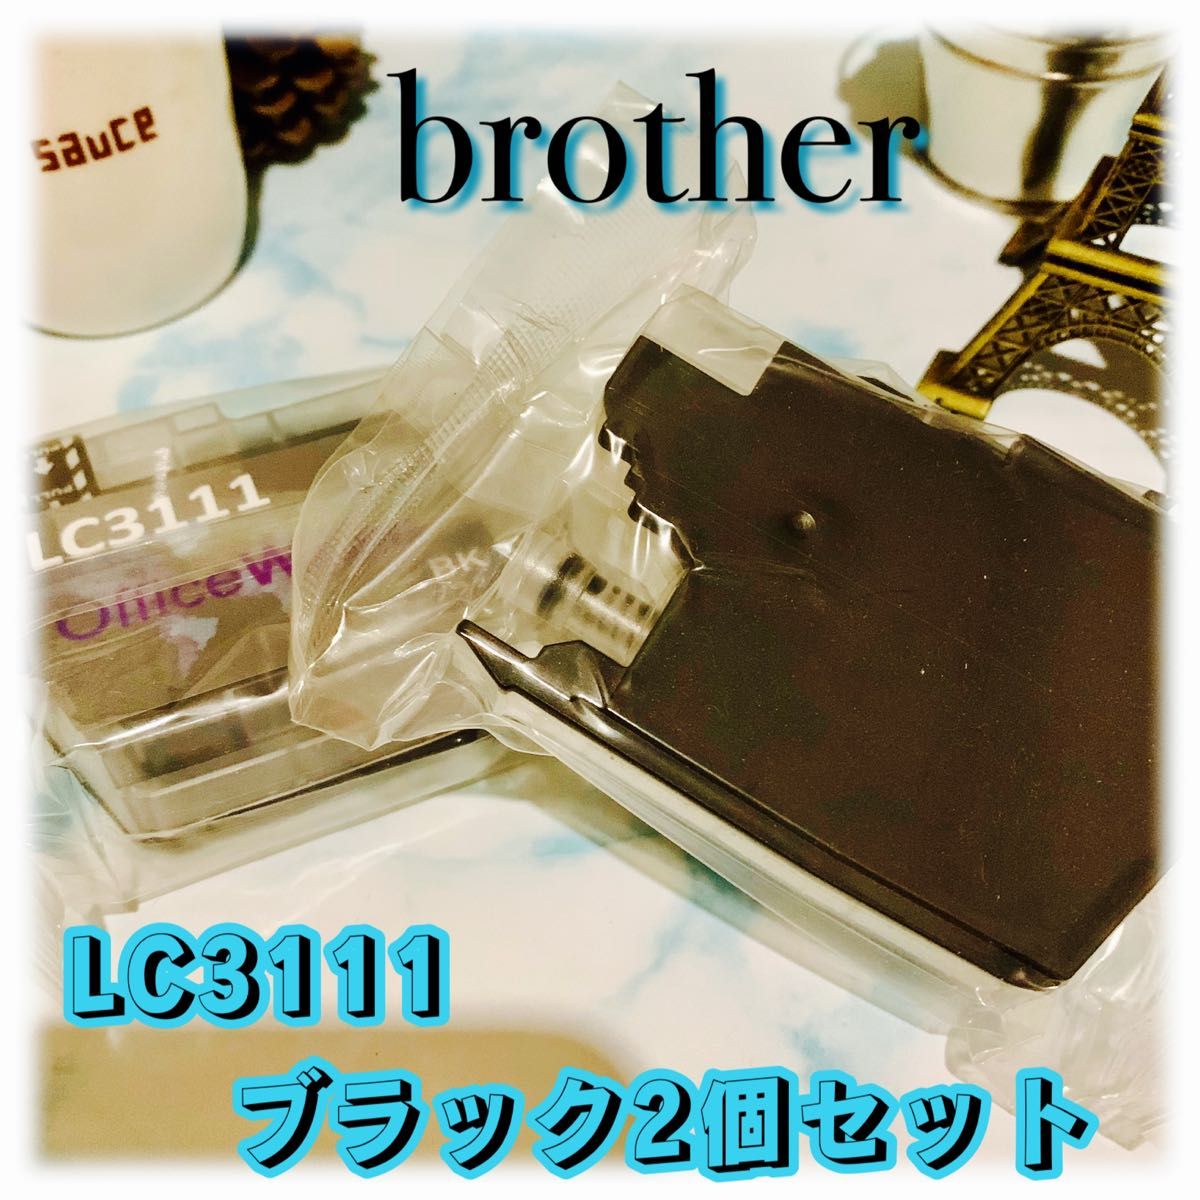 【brother】ブラザー LC3111カートリッジ互換インク ブラック2個